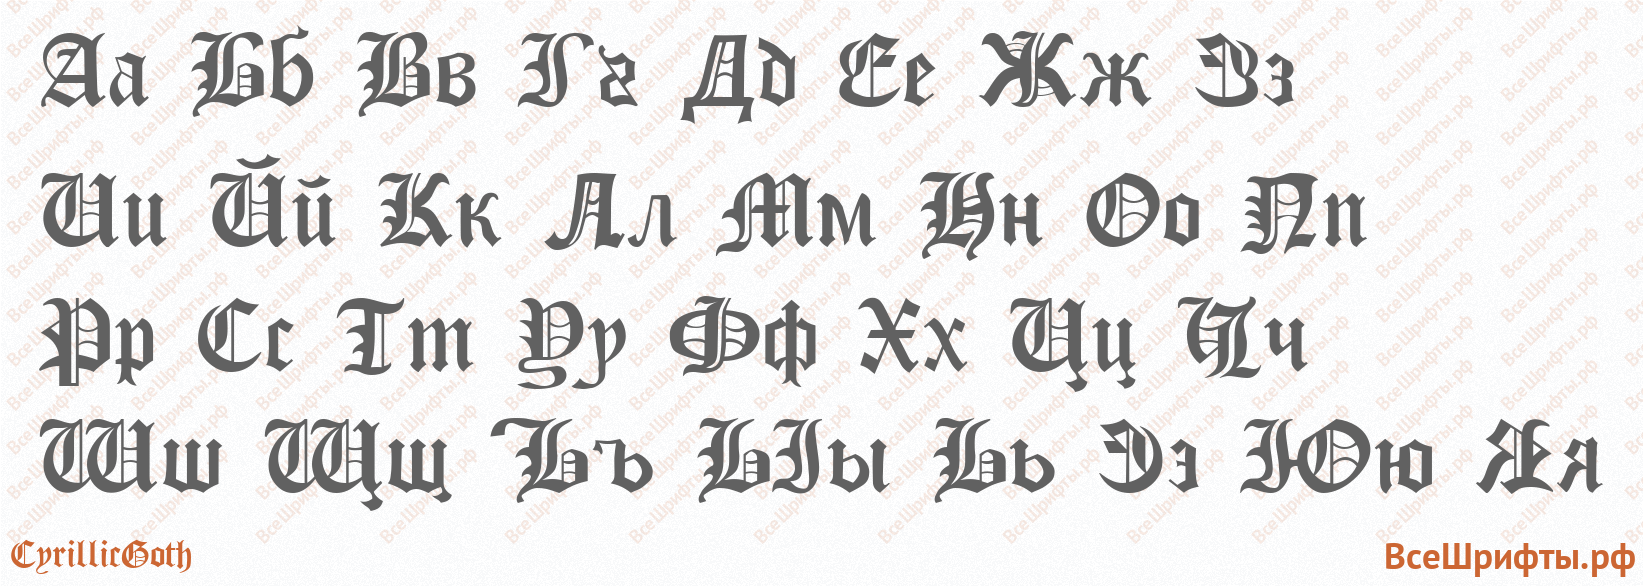 Шрифт CyrillicGoth с русскими буквами